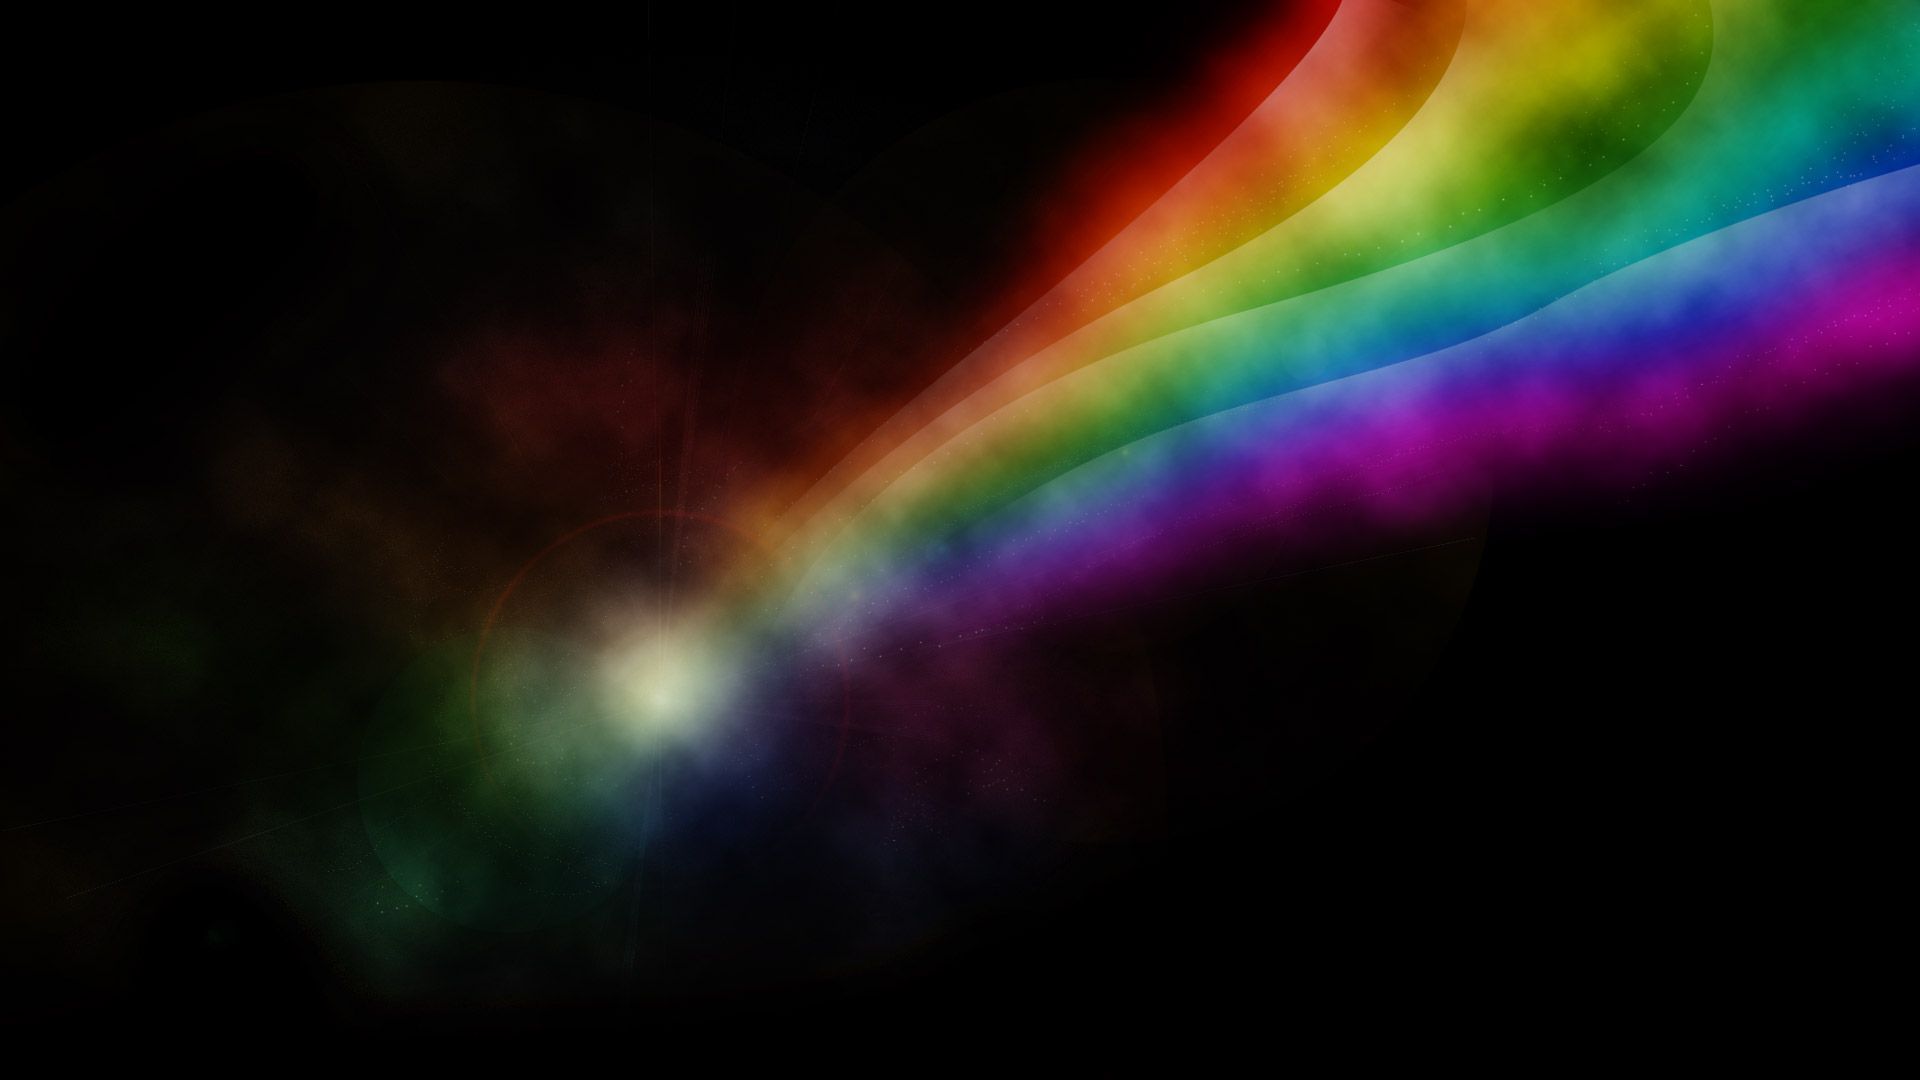 HD Rainbow Wallpaper. Rainbow wallpaper, Rainbow aesthetic